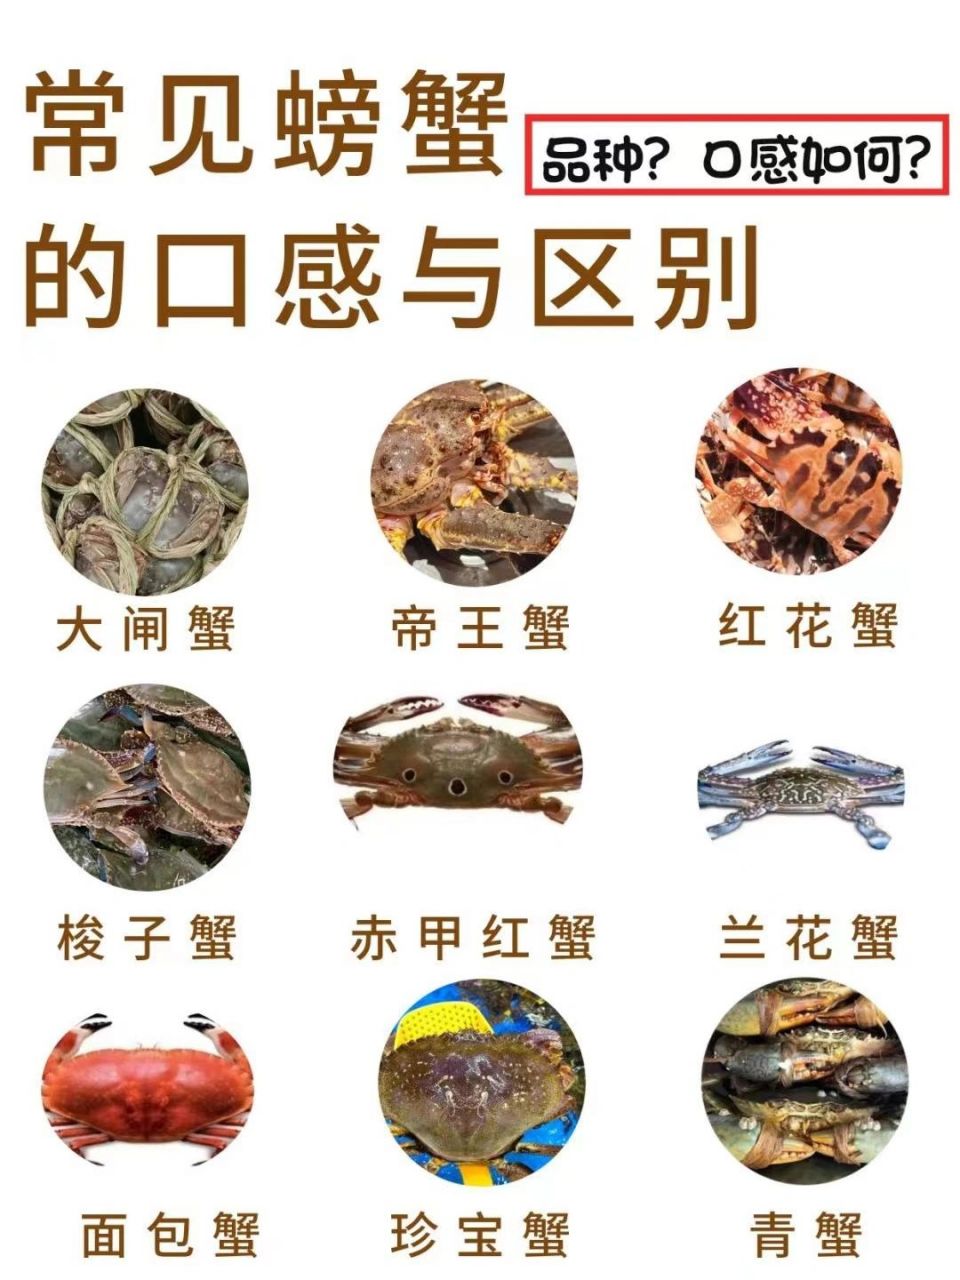 螃蟹的品种和图片介绍图片